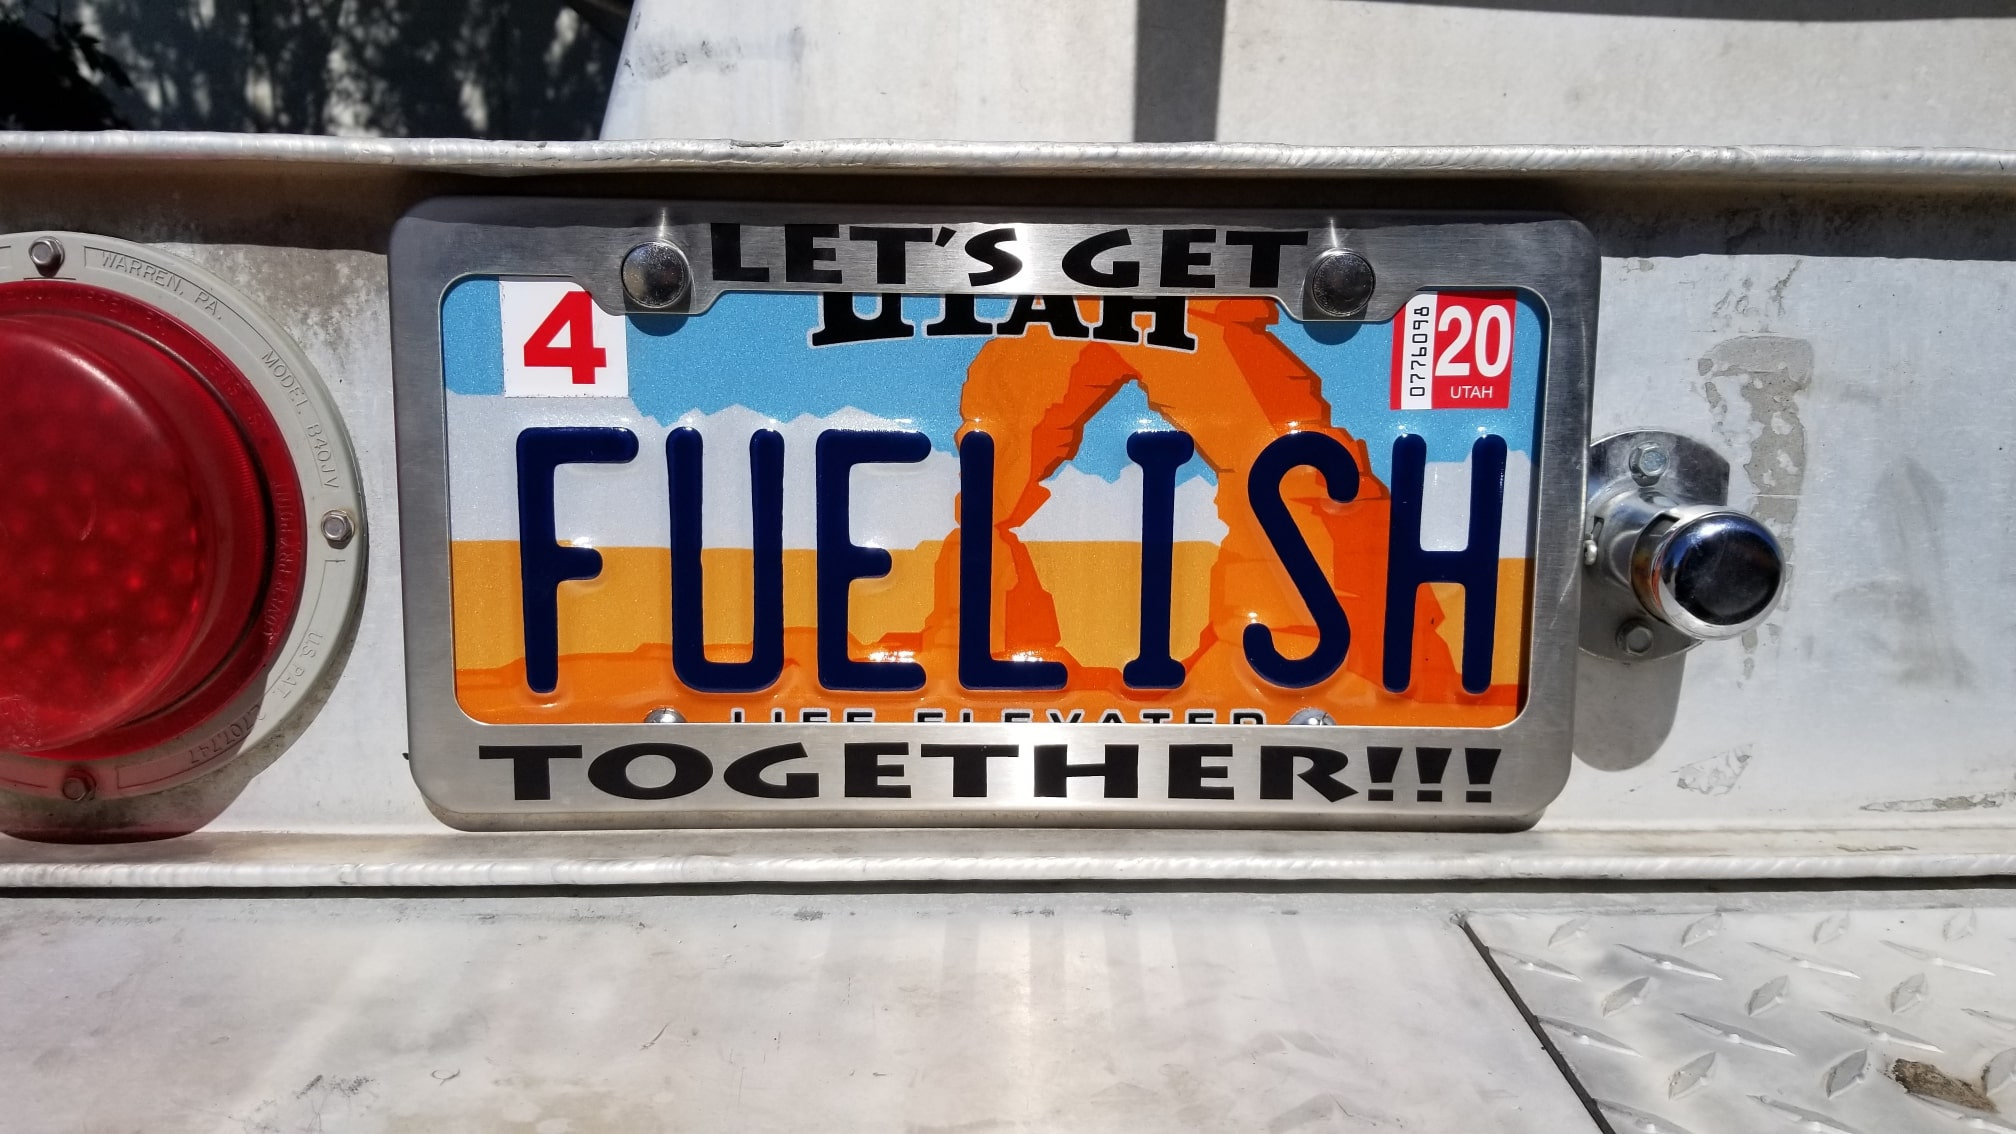 Fuelish Plate